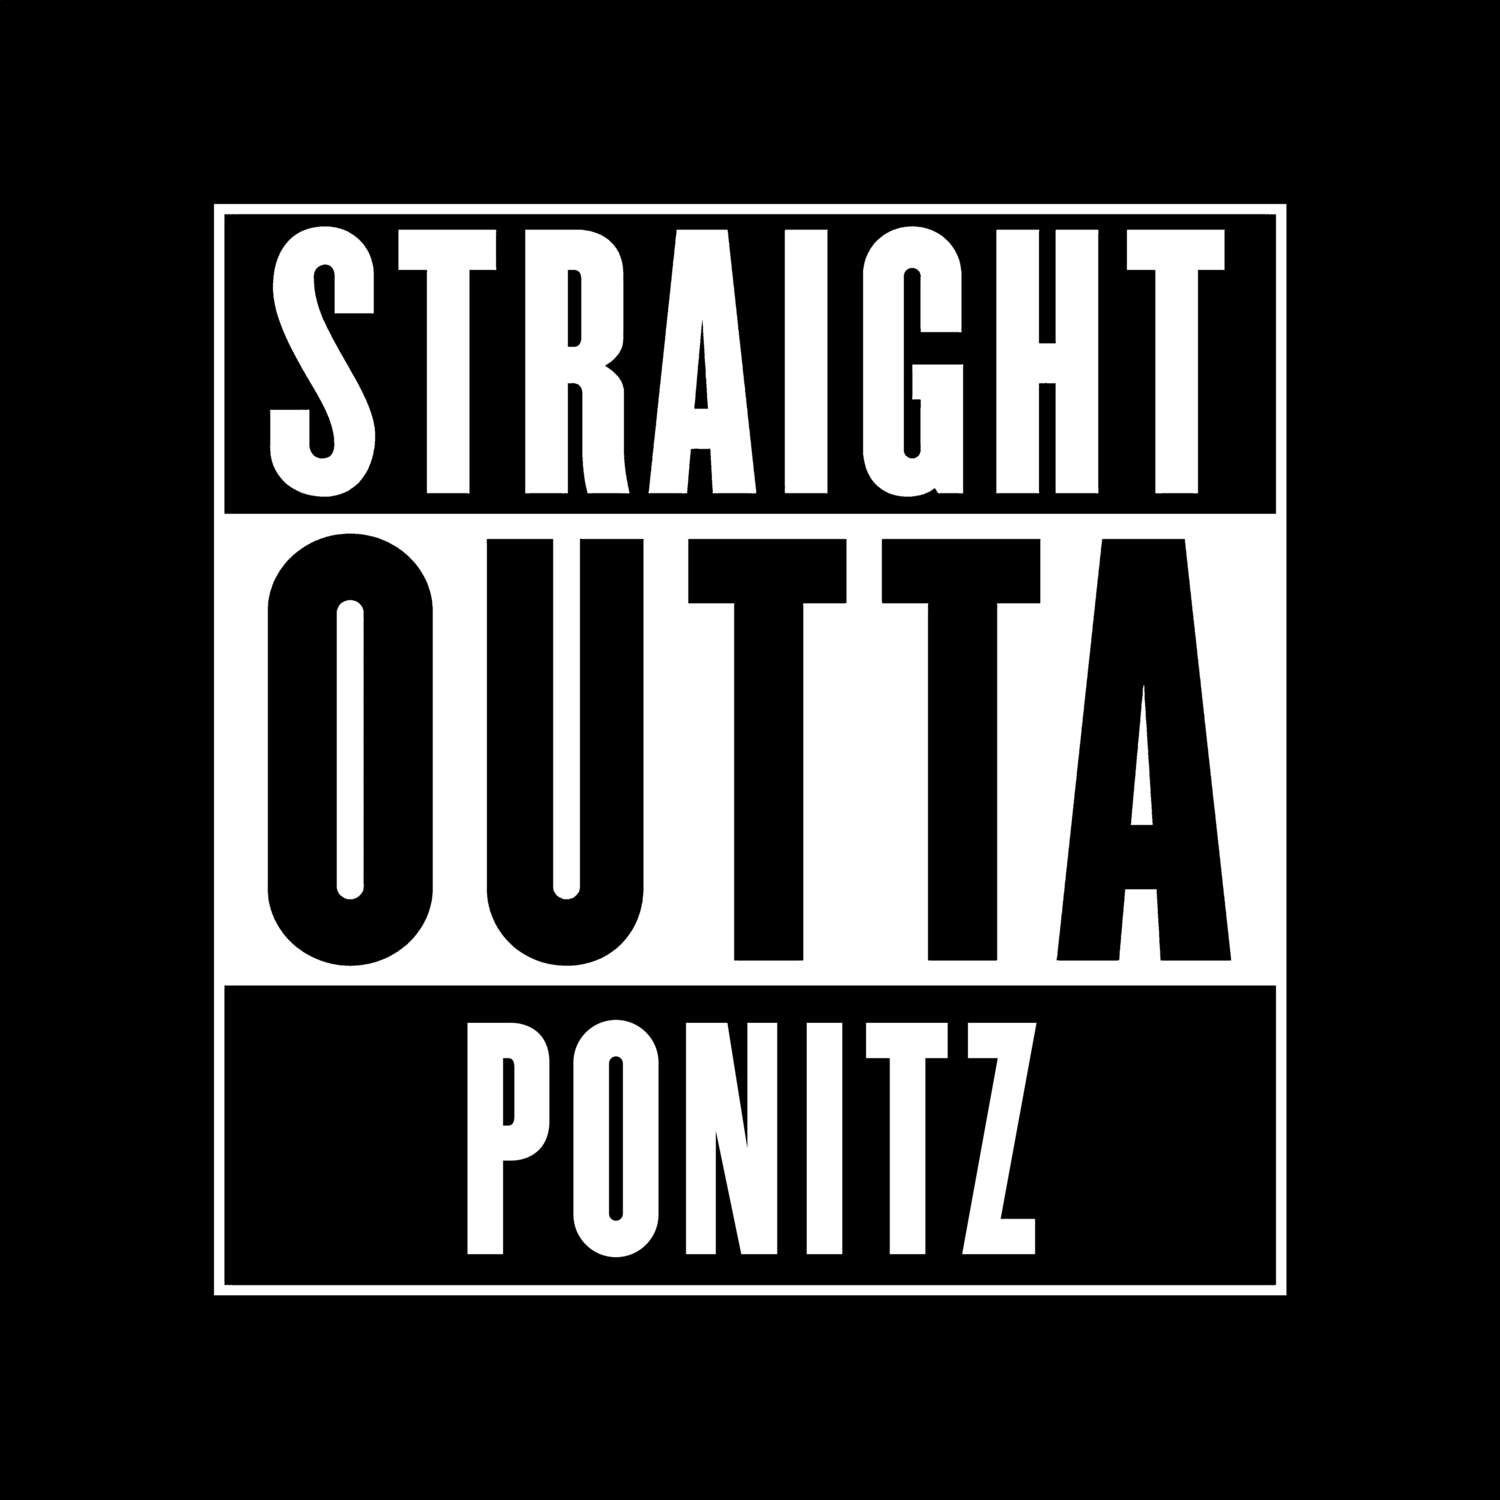 Ponitz T-Shirt »Straight Outta«